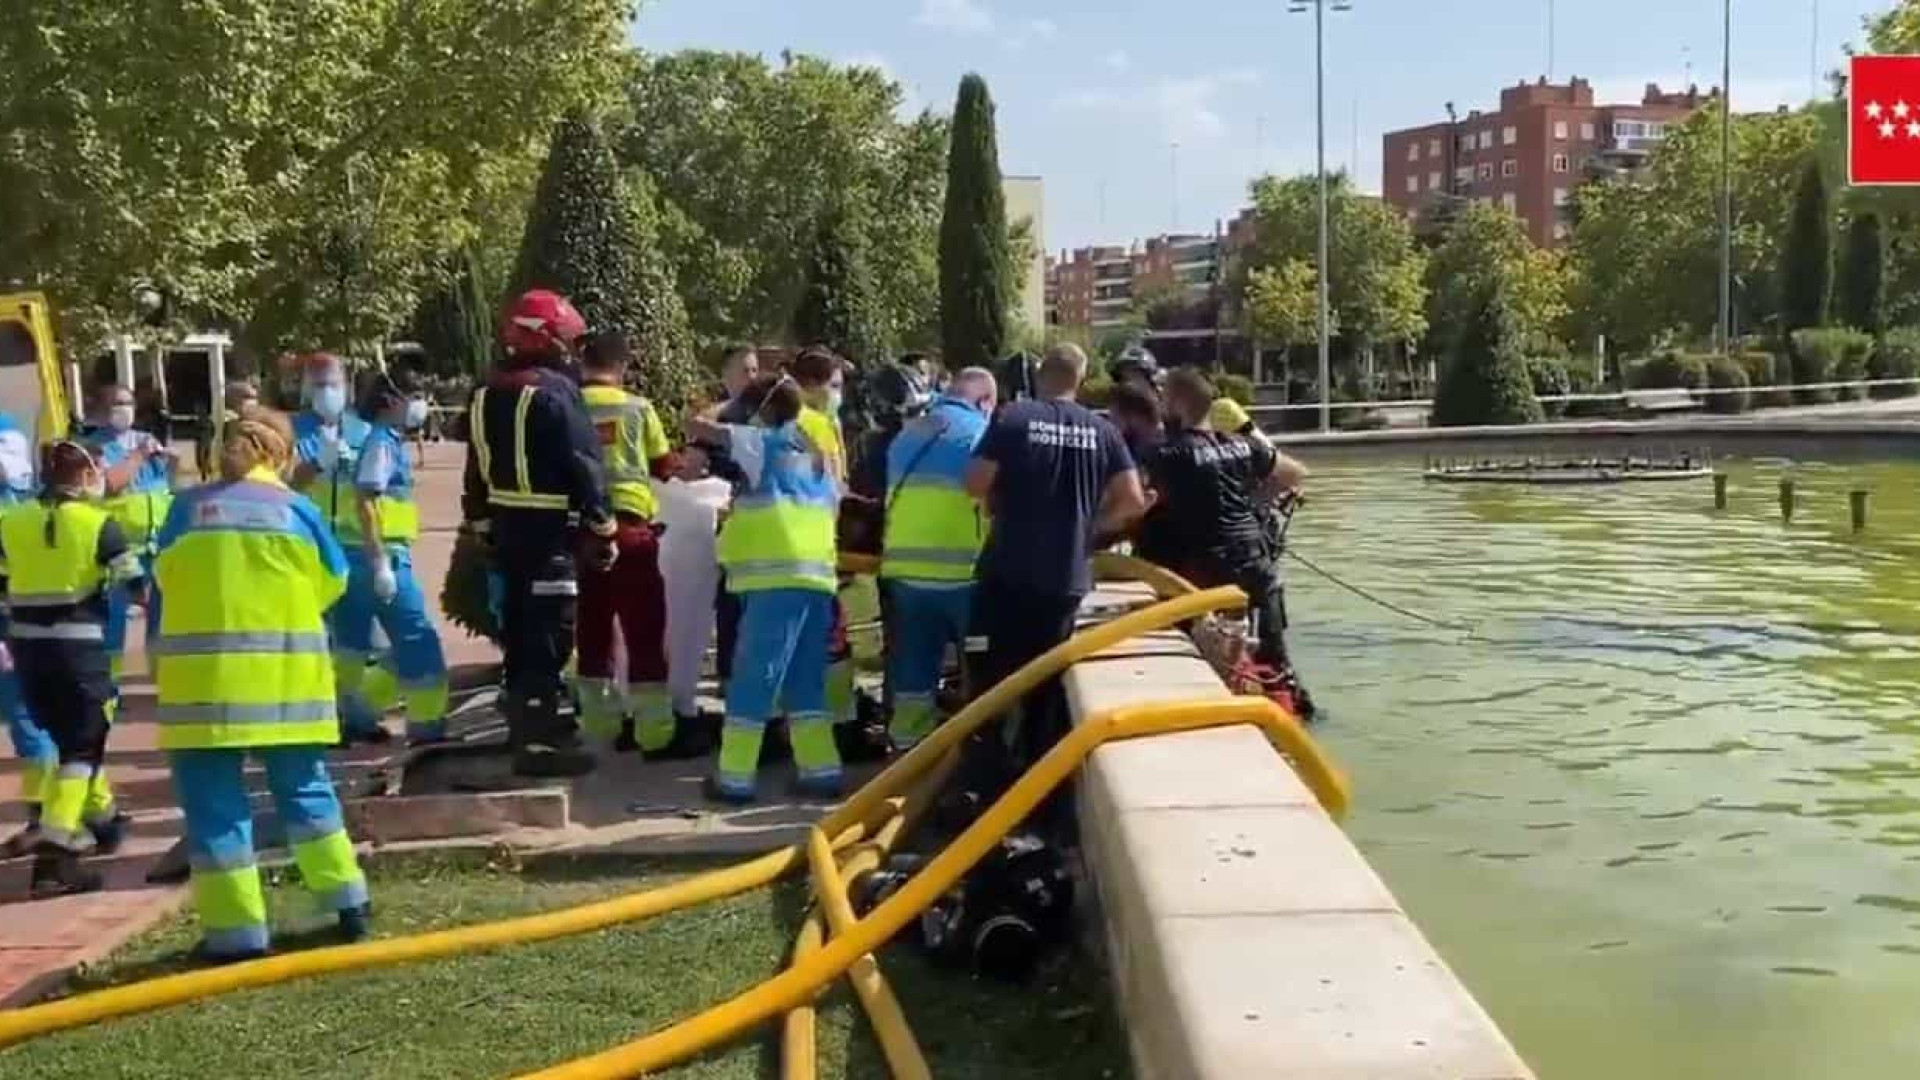 Jovem morre afogado em fonte após ser sugado por cano na Espanha